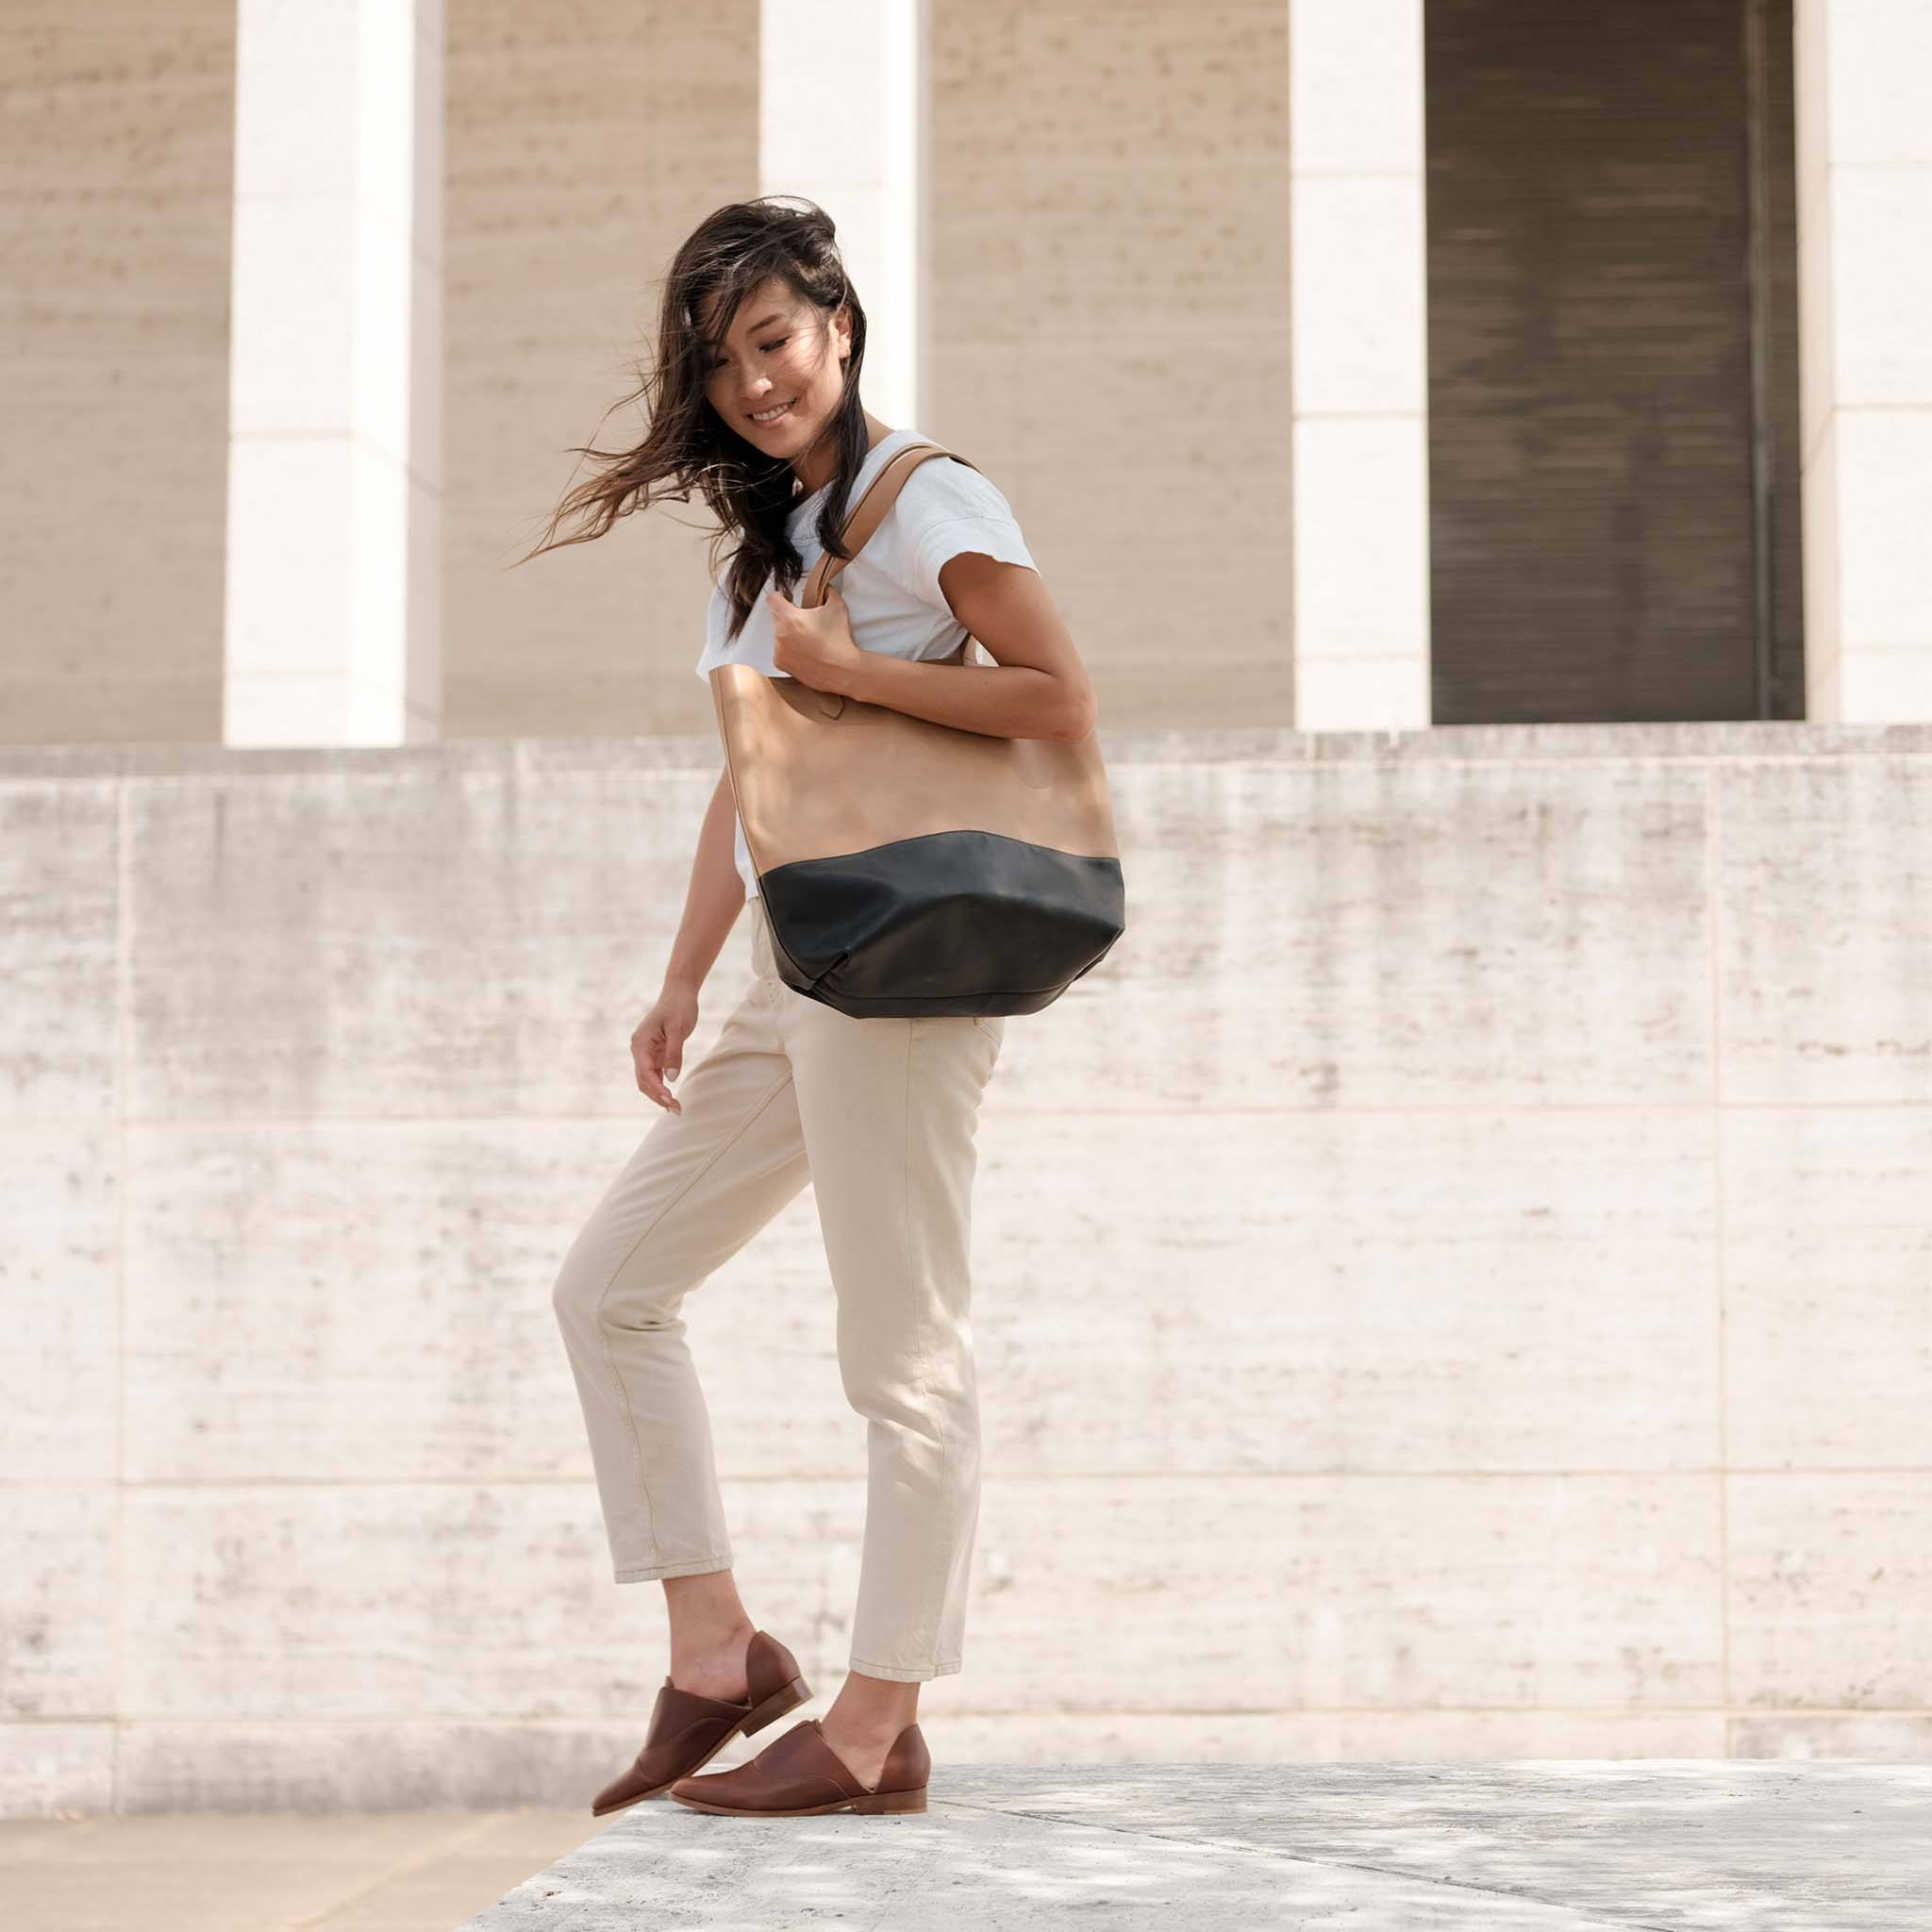 Louis Vuitton: LV Pont 9 shoulder bag combines versatility with style